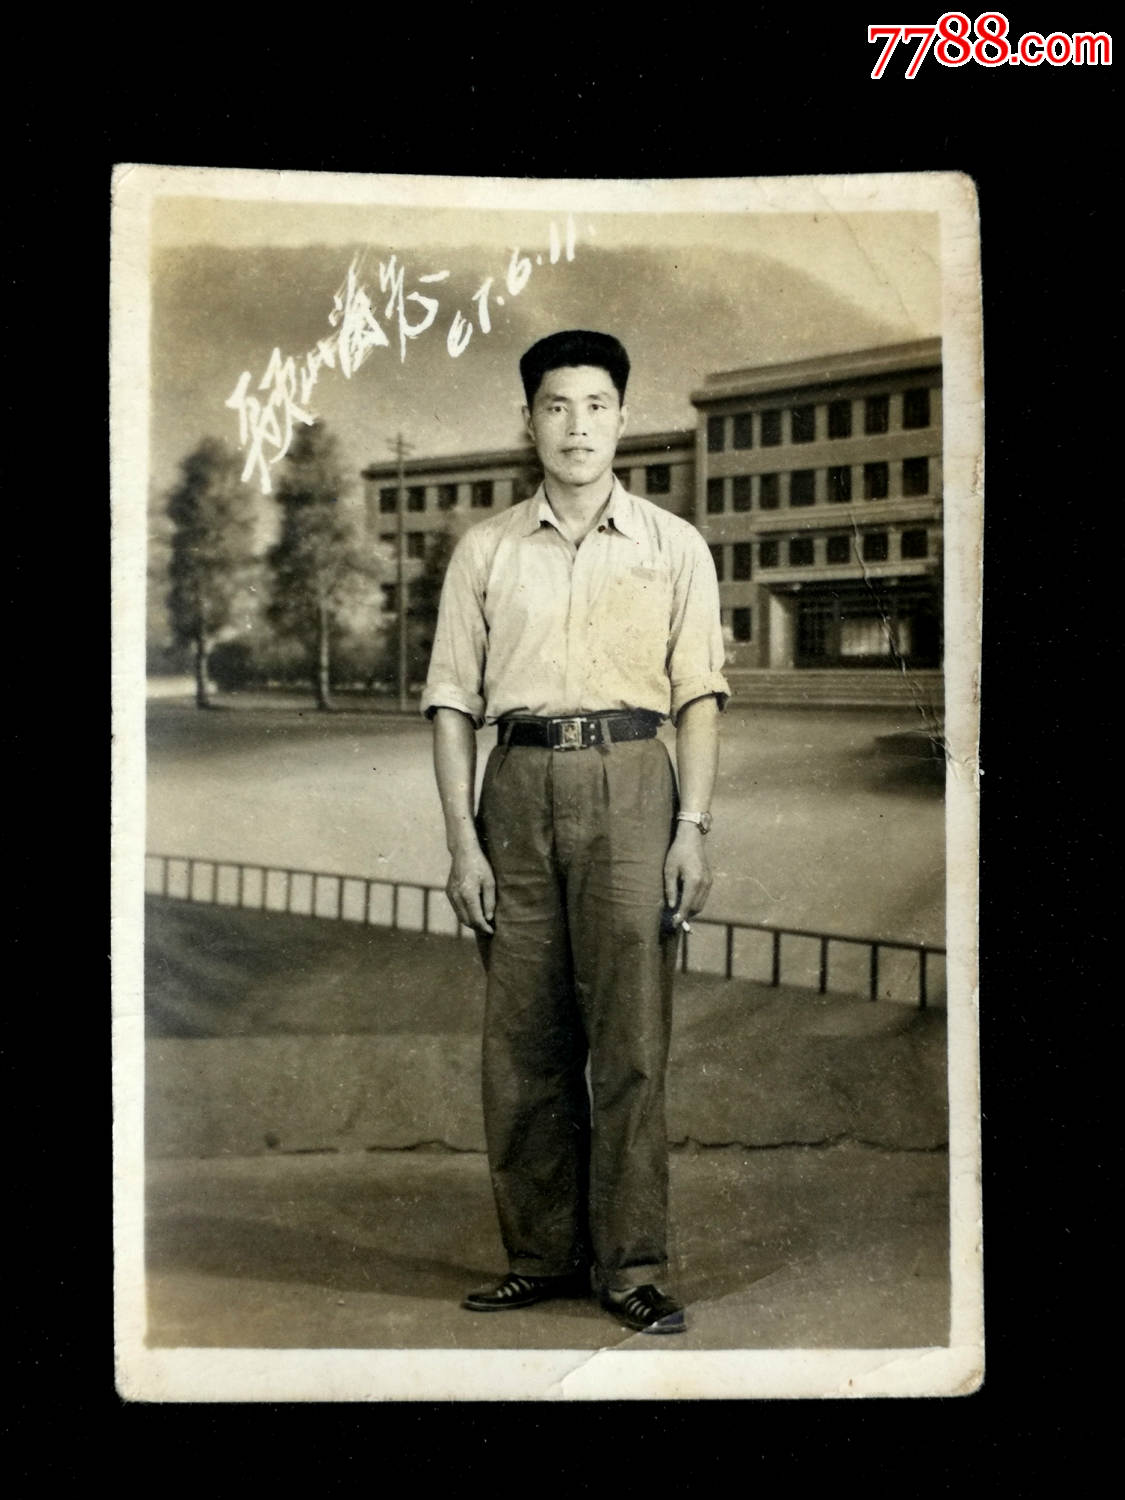 六十年代老照片:《解放军战士便装照》【1961年6月11日尺寸7x5公分